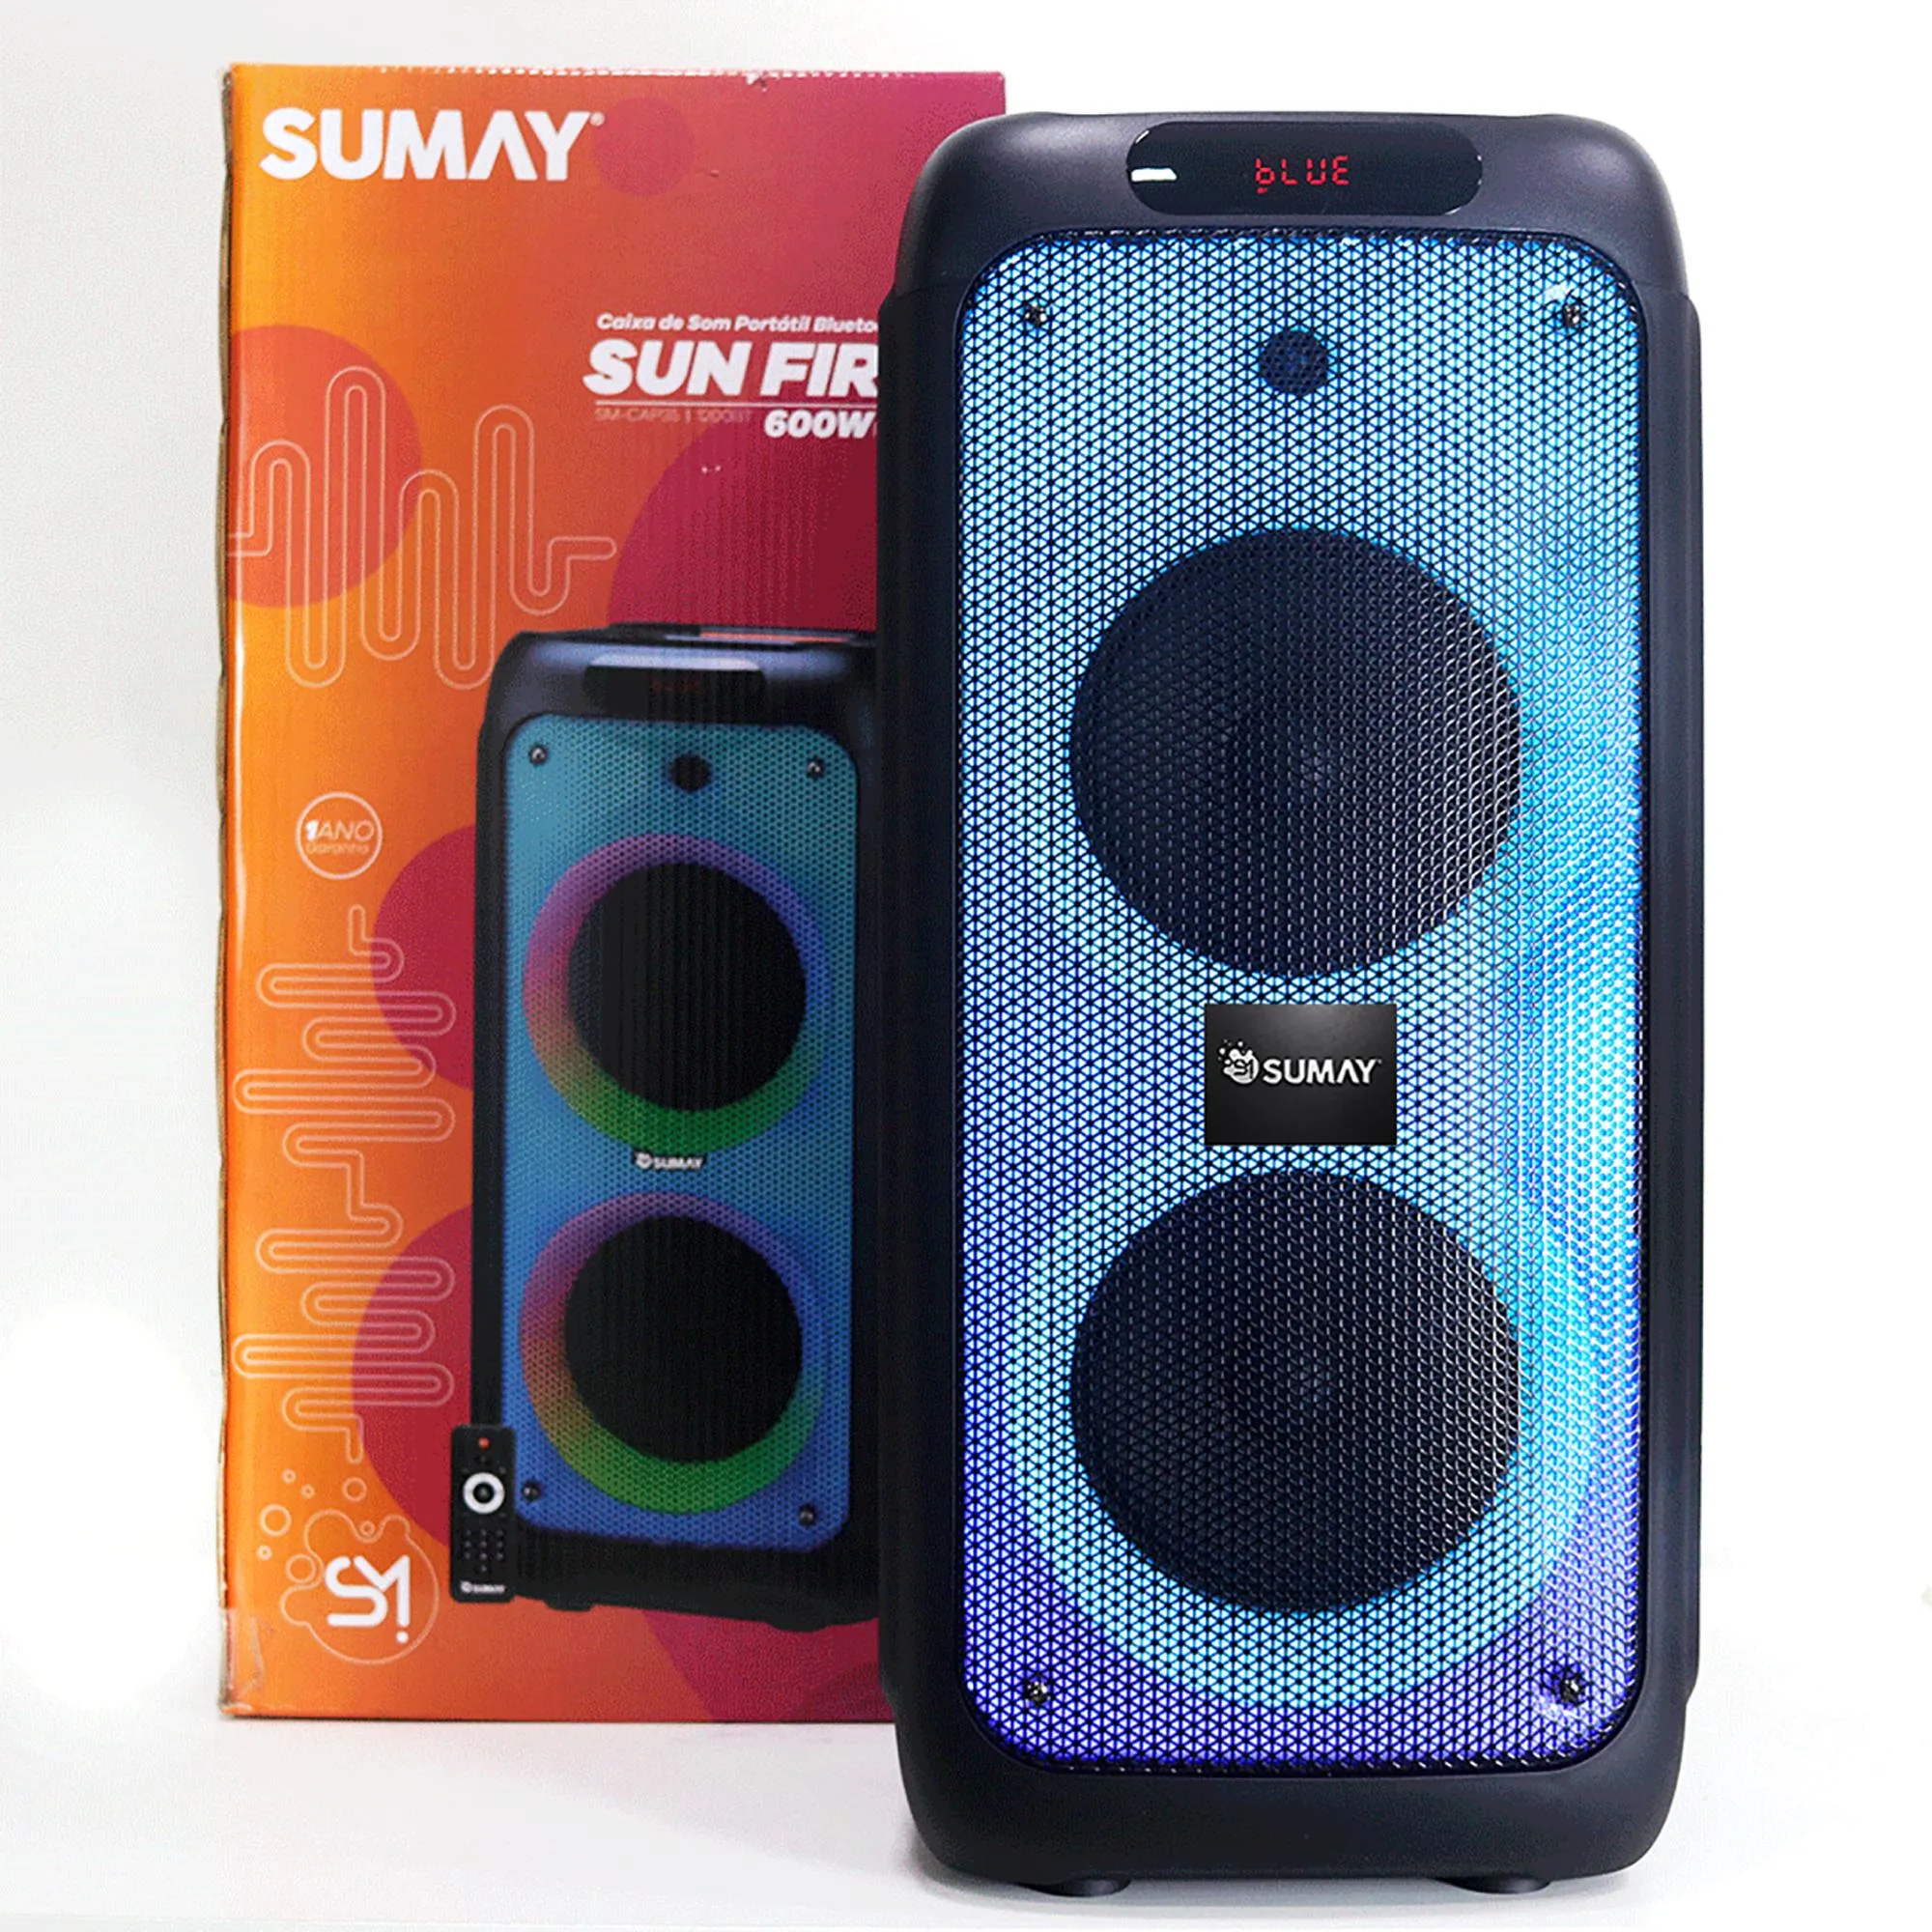 Caixa de Som Portátil Sumay Sunfire CAP35 600w Preta por 1.436,99 à vista no boleto/pix ou parcele em até 12x sem juros. Compre na loja Mundomax!